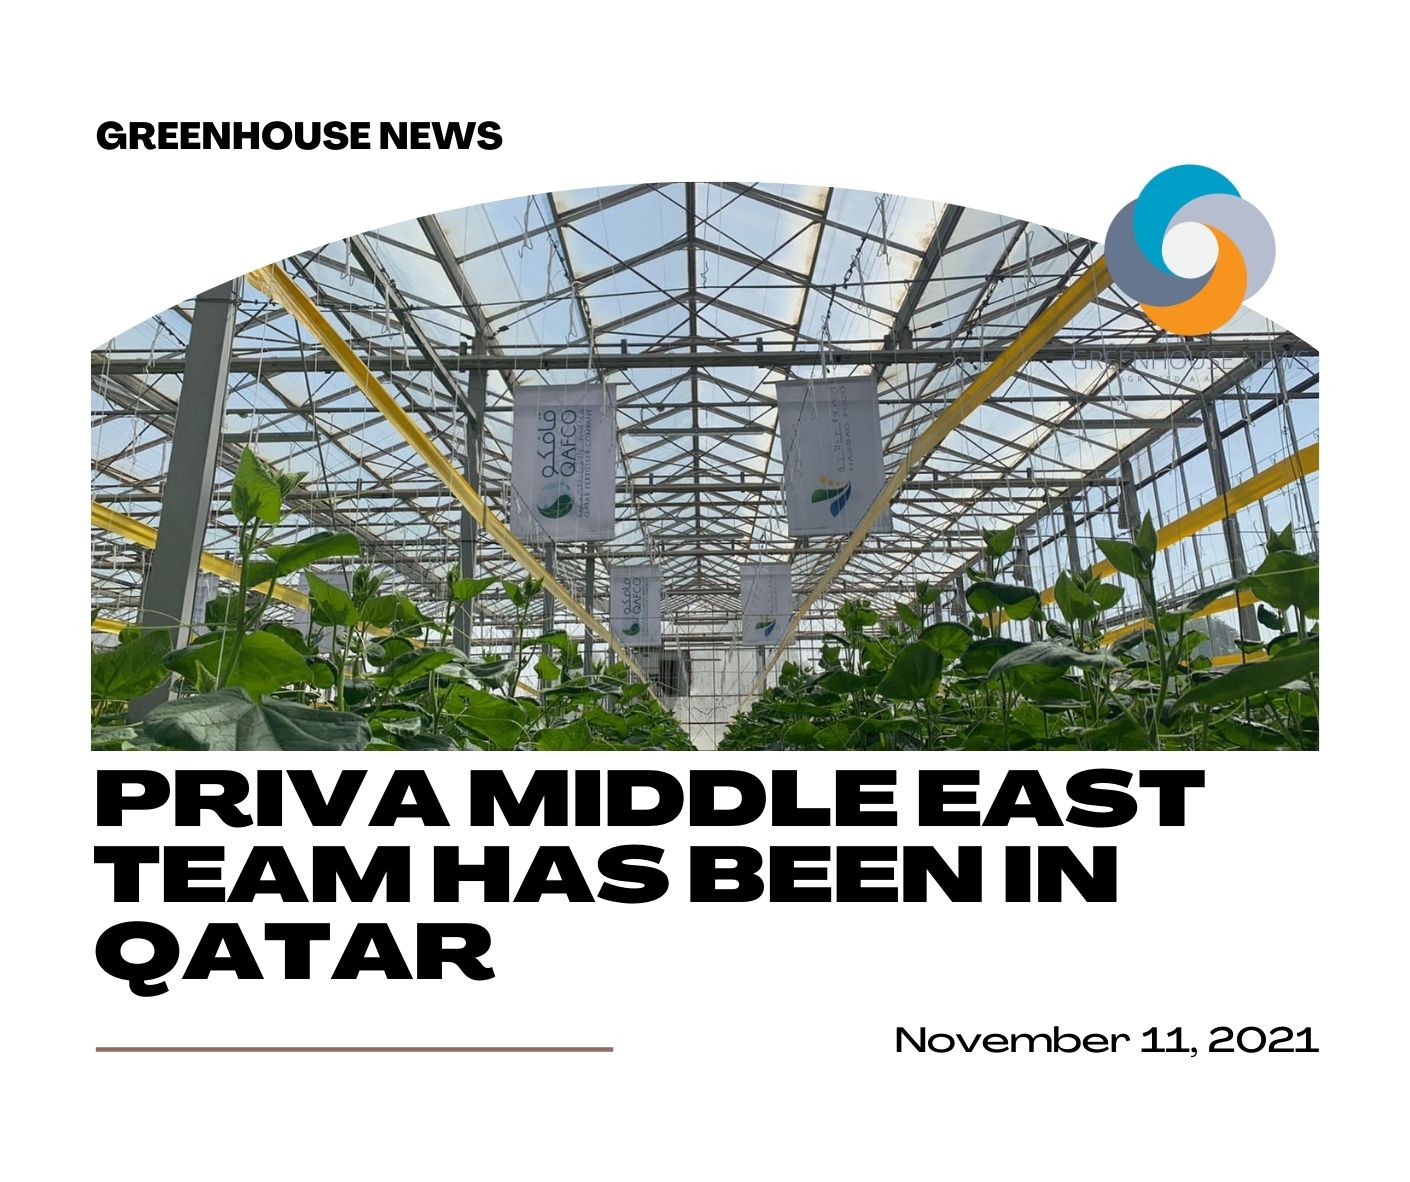 በፌስቡክ ላይ Greenhouse news ይቅዱ።